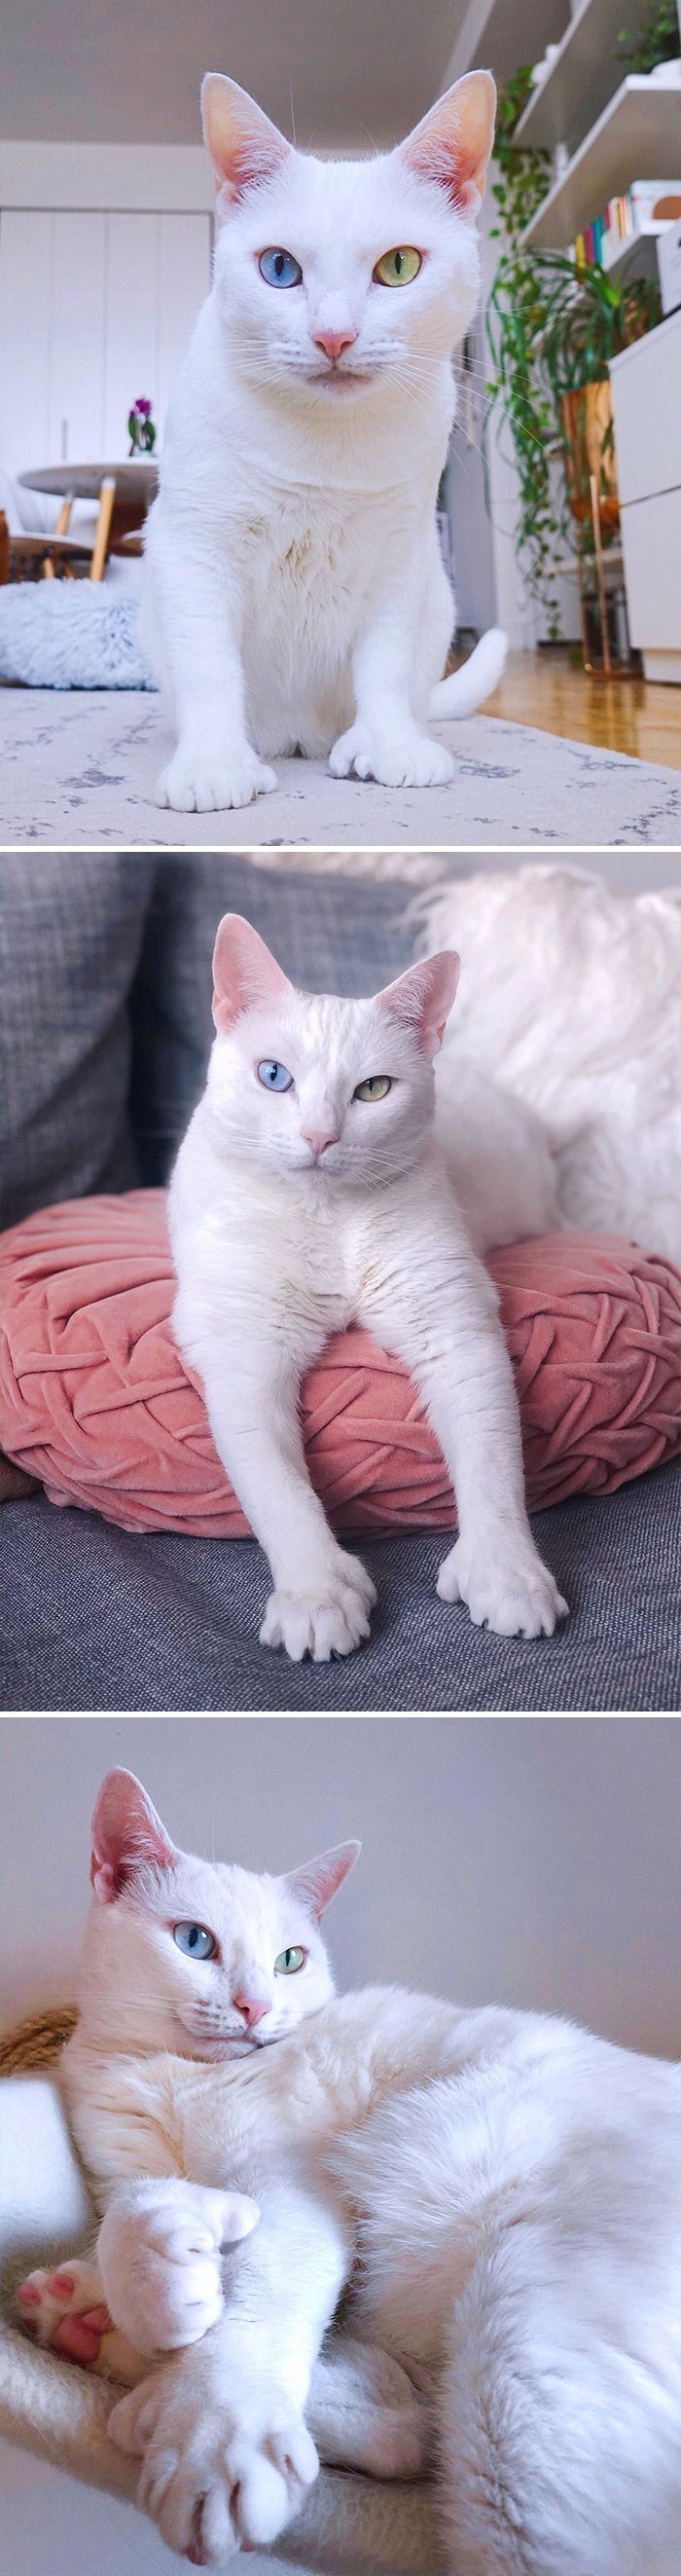 Sansa to kotka cierpiąca na przeczulicę. Wyróżnia się różnokolorowymi oczami i większą liczbą palców.